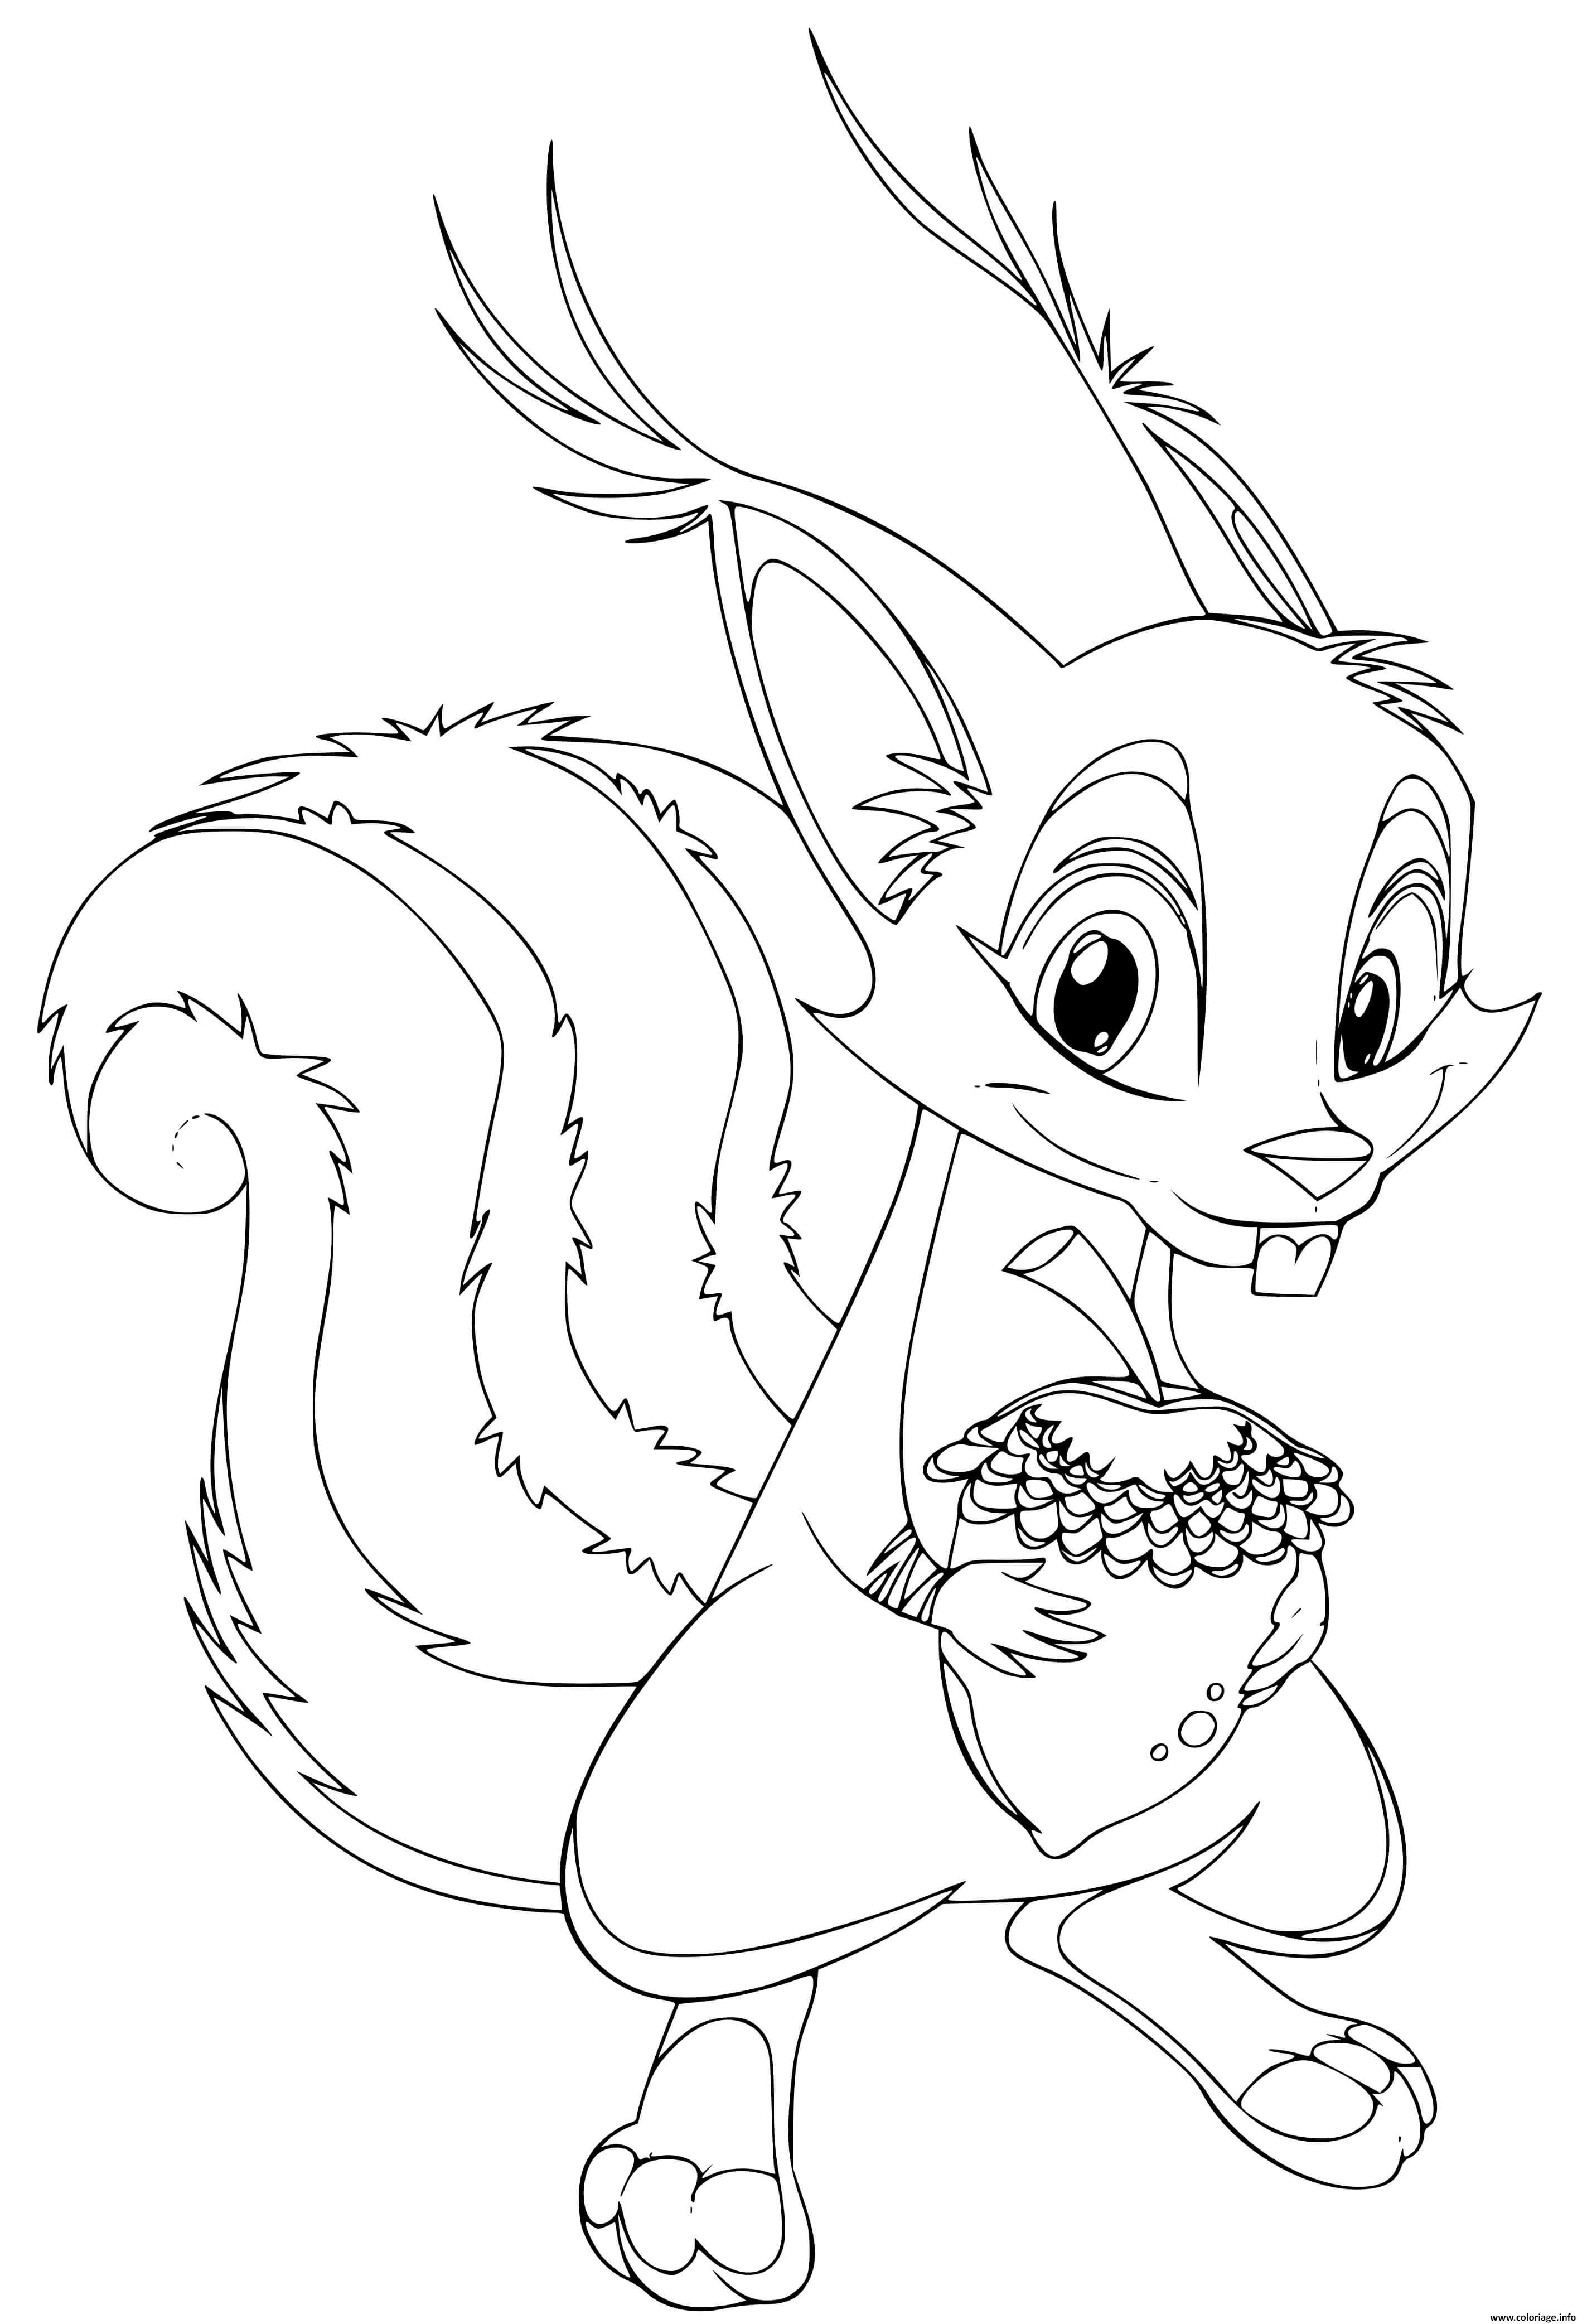 Dessin ecureuil squirrel Coloriage Gratuit à Imprimer